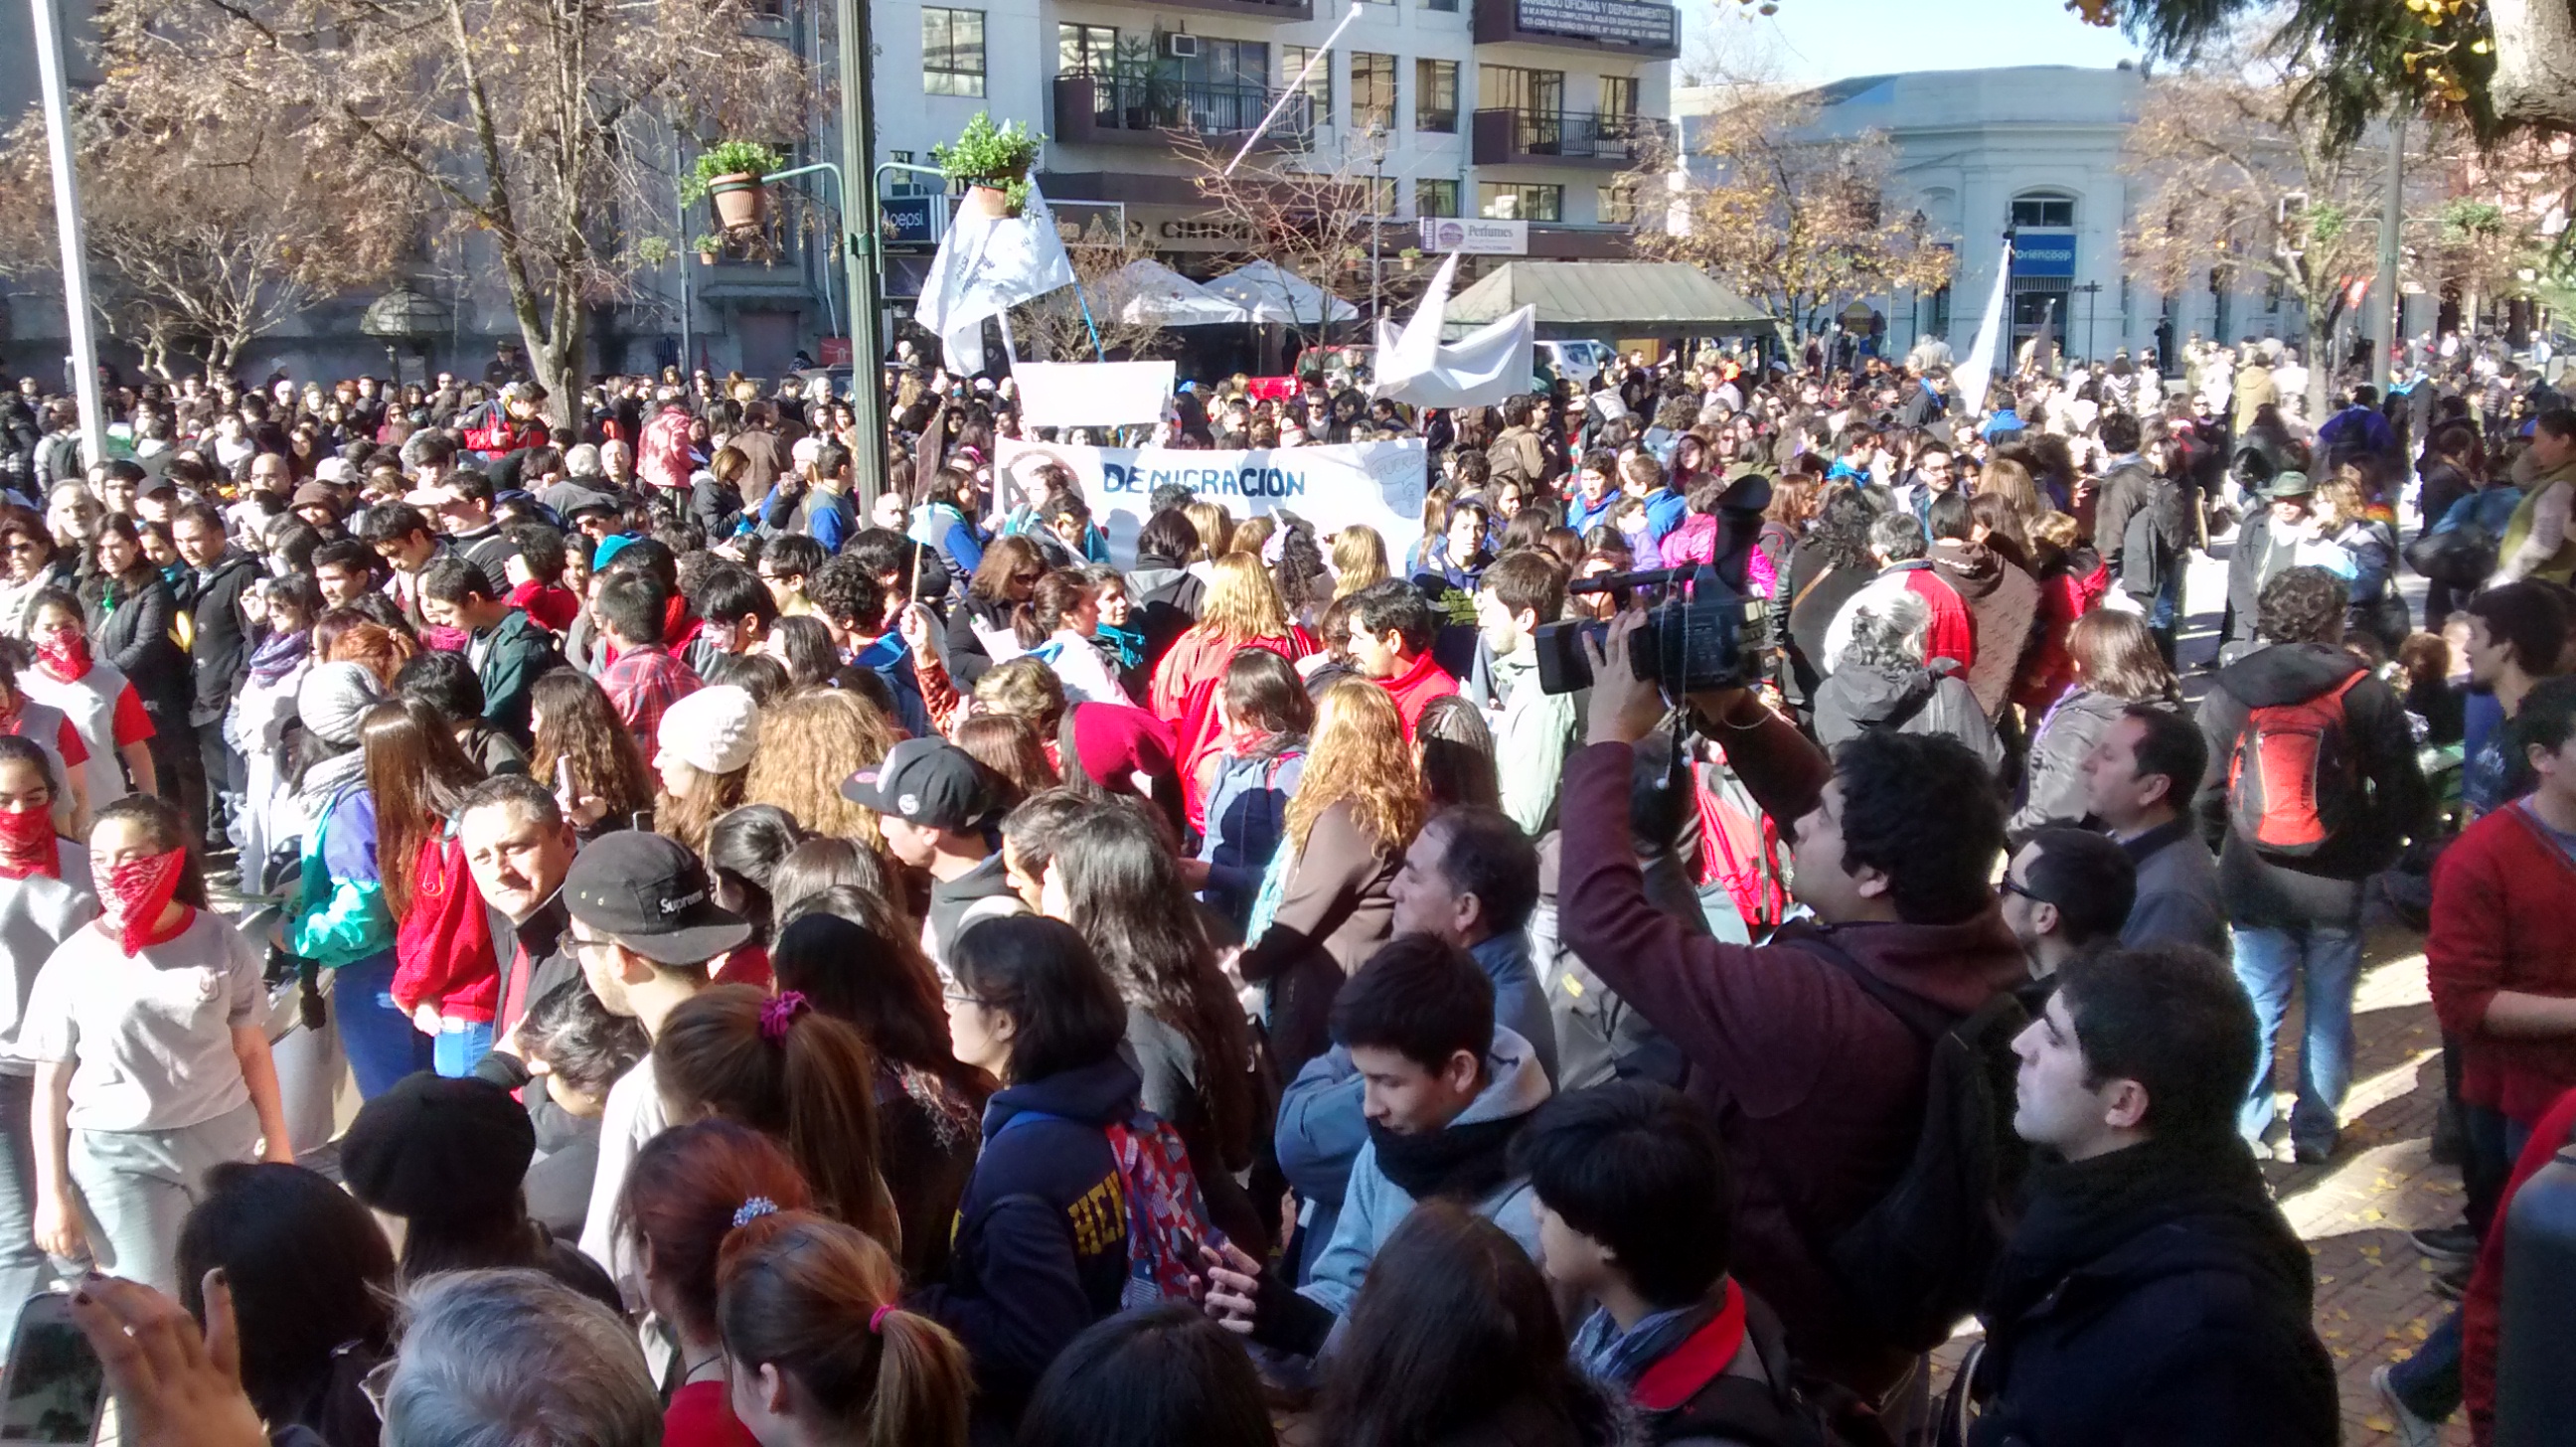 Profesores fueron apoyados en marcha masiva por estudiantes de educación superior de Talca